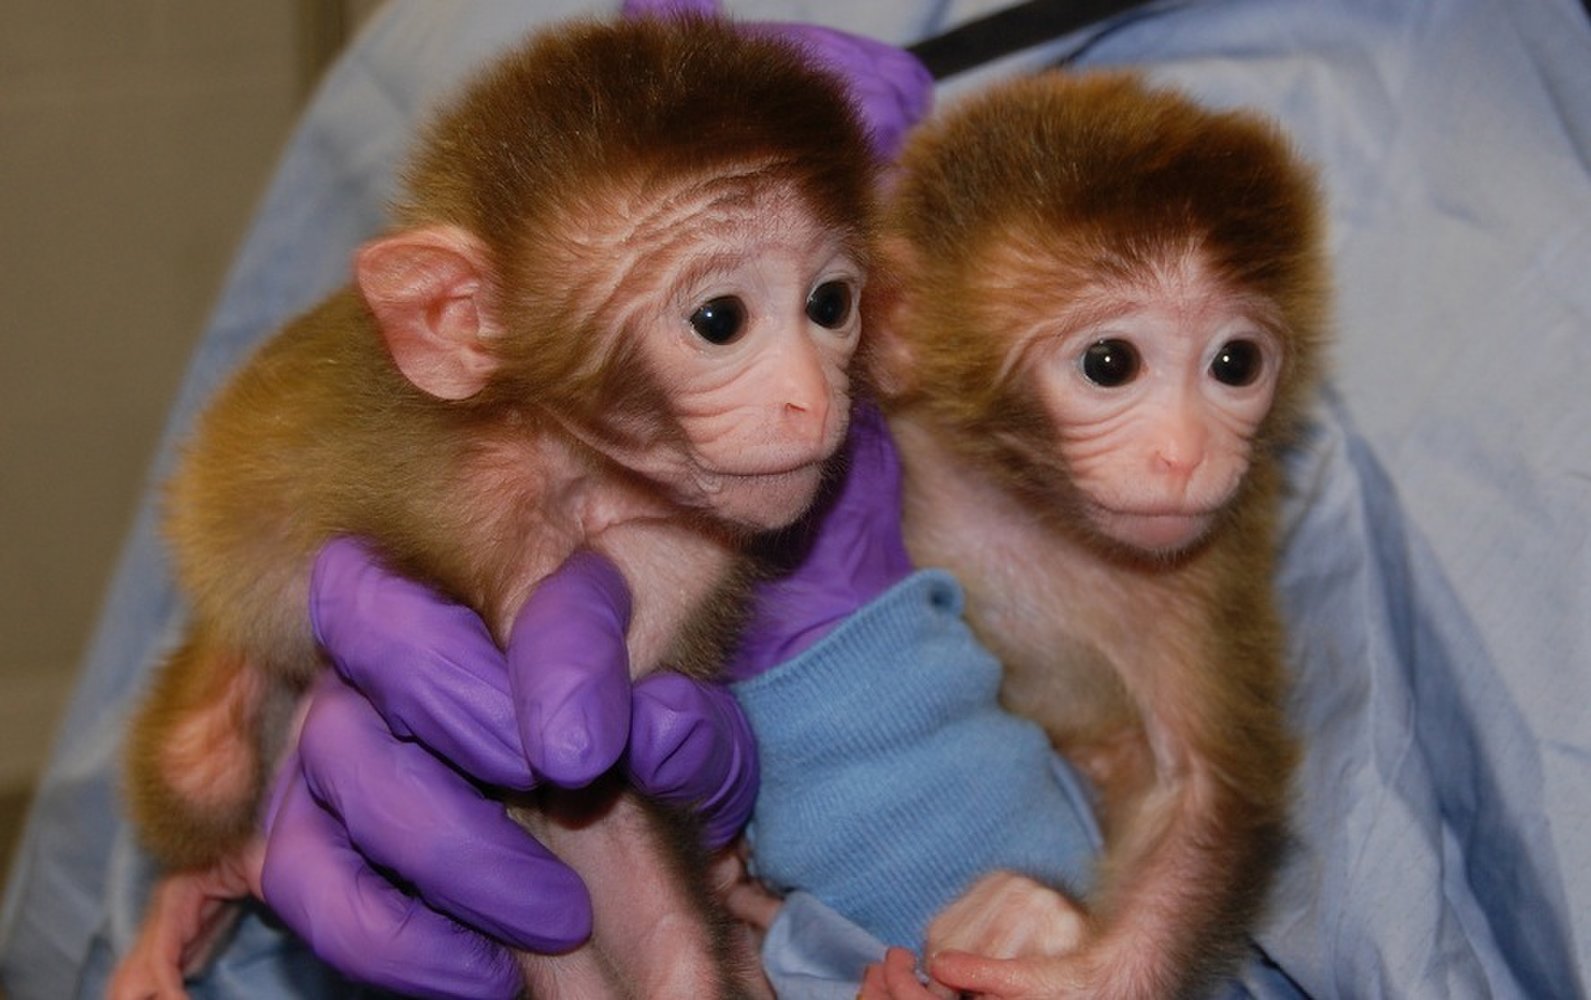 Cloned monkeys